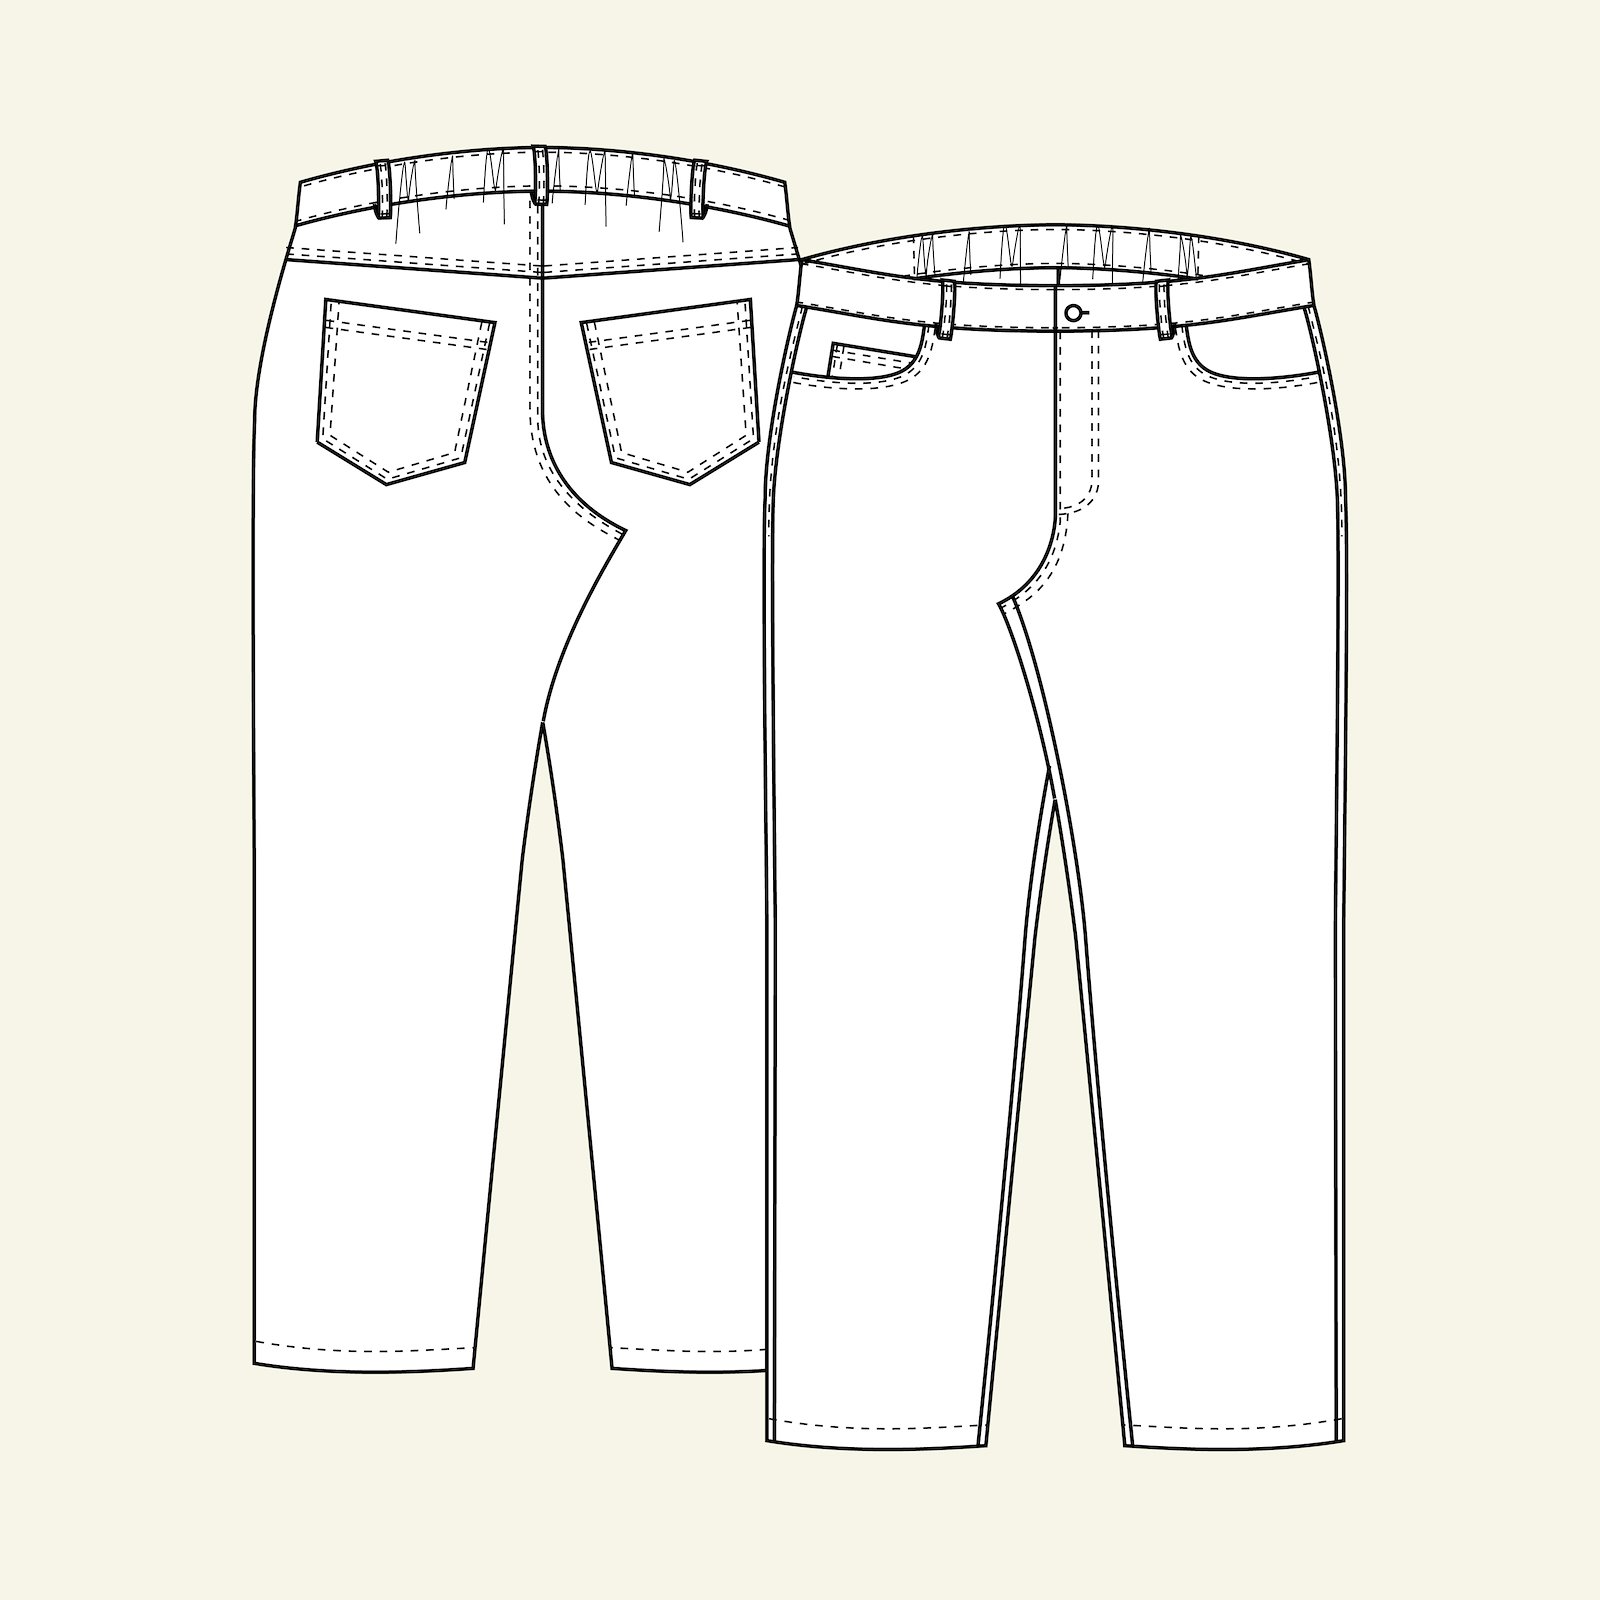 Klassisk jeans m/ strikk i linning b, 48 p70007000_p70007001_p70007002_p70007003_p70007004_pack_b